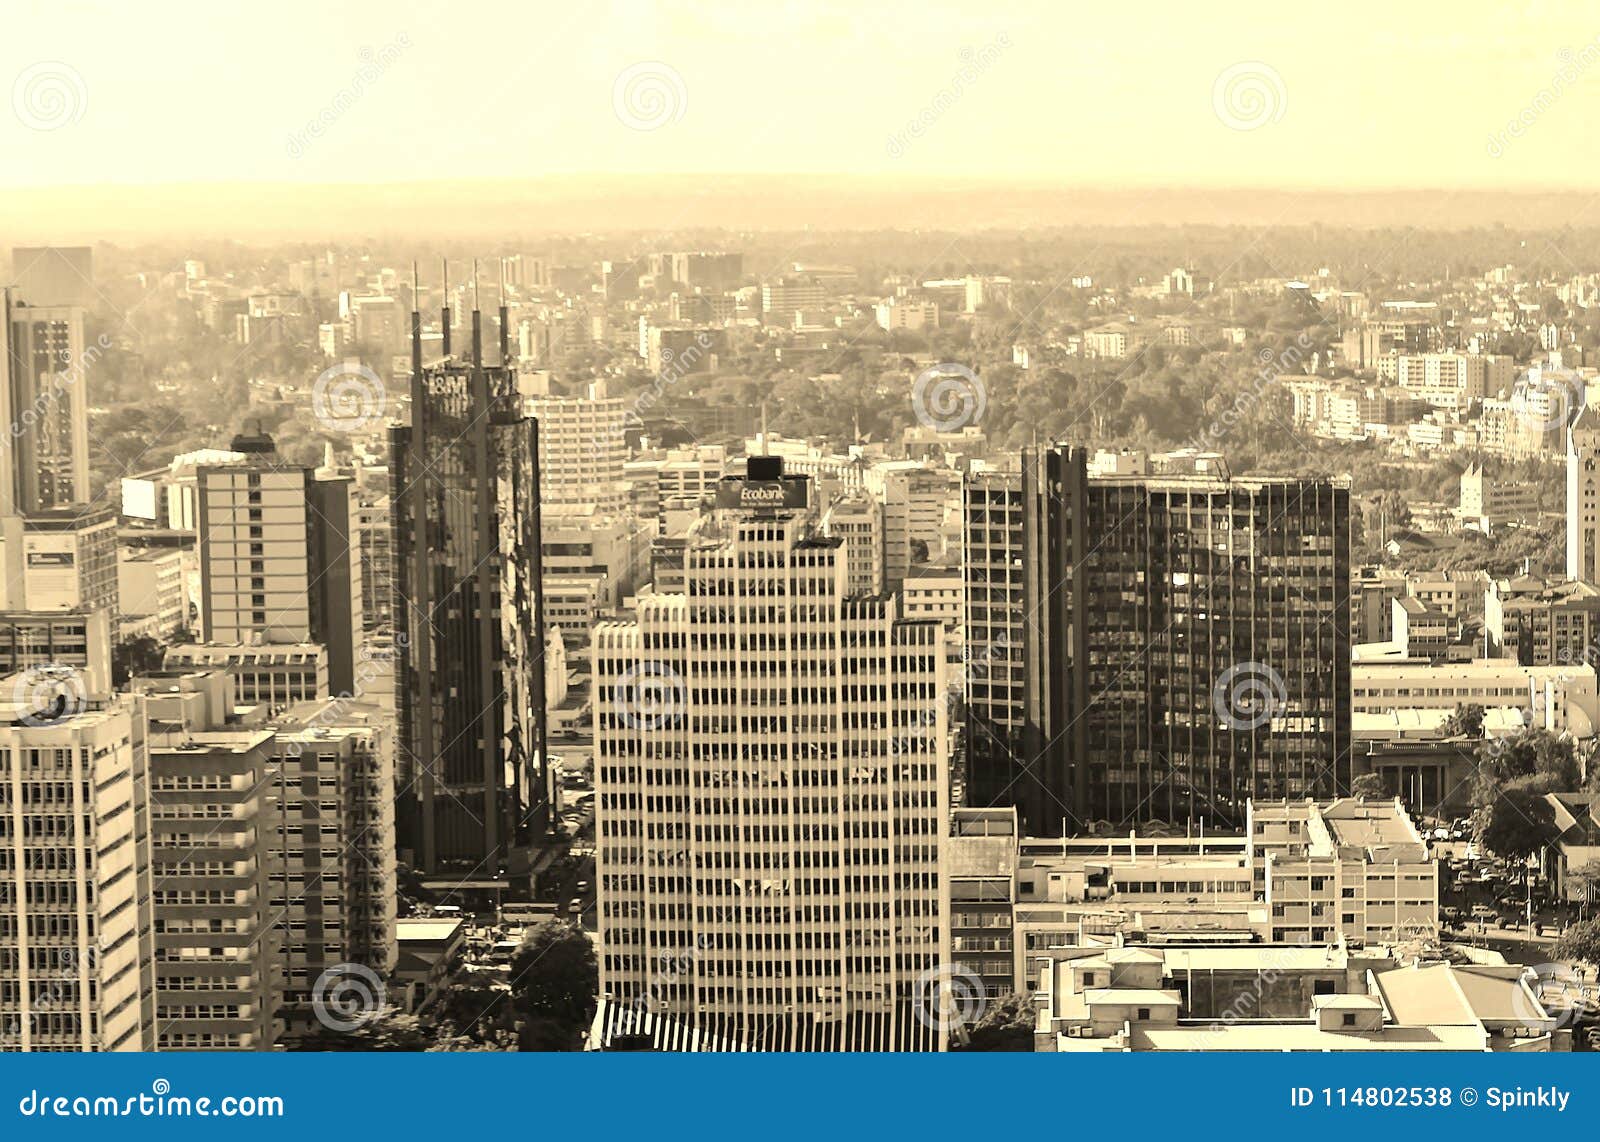 nairobi skyline view of the city